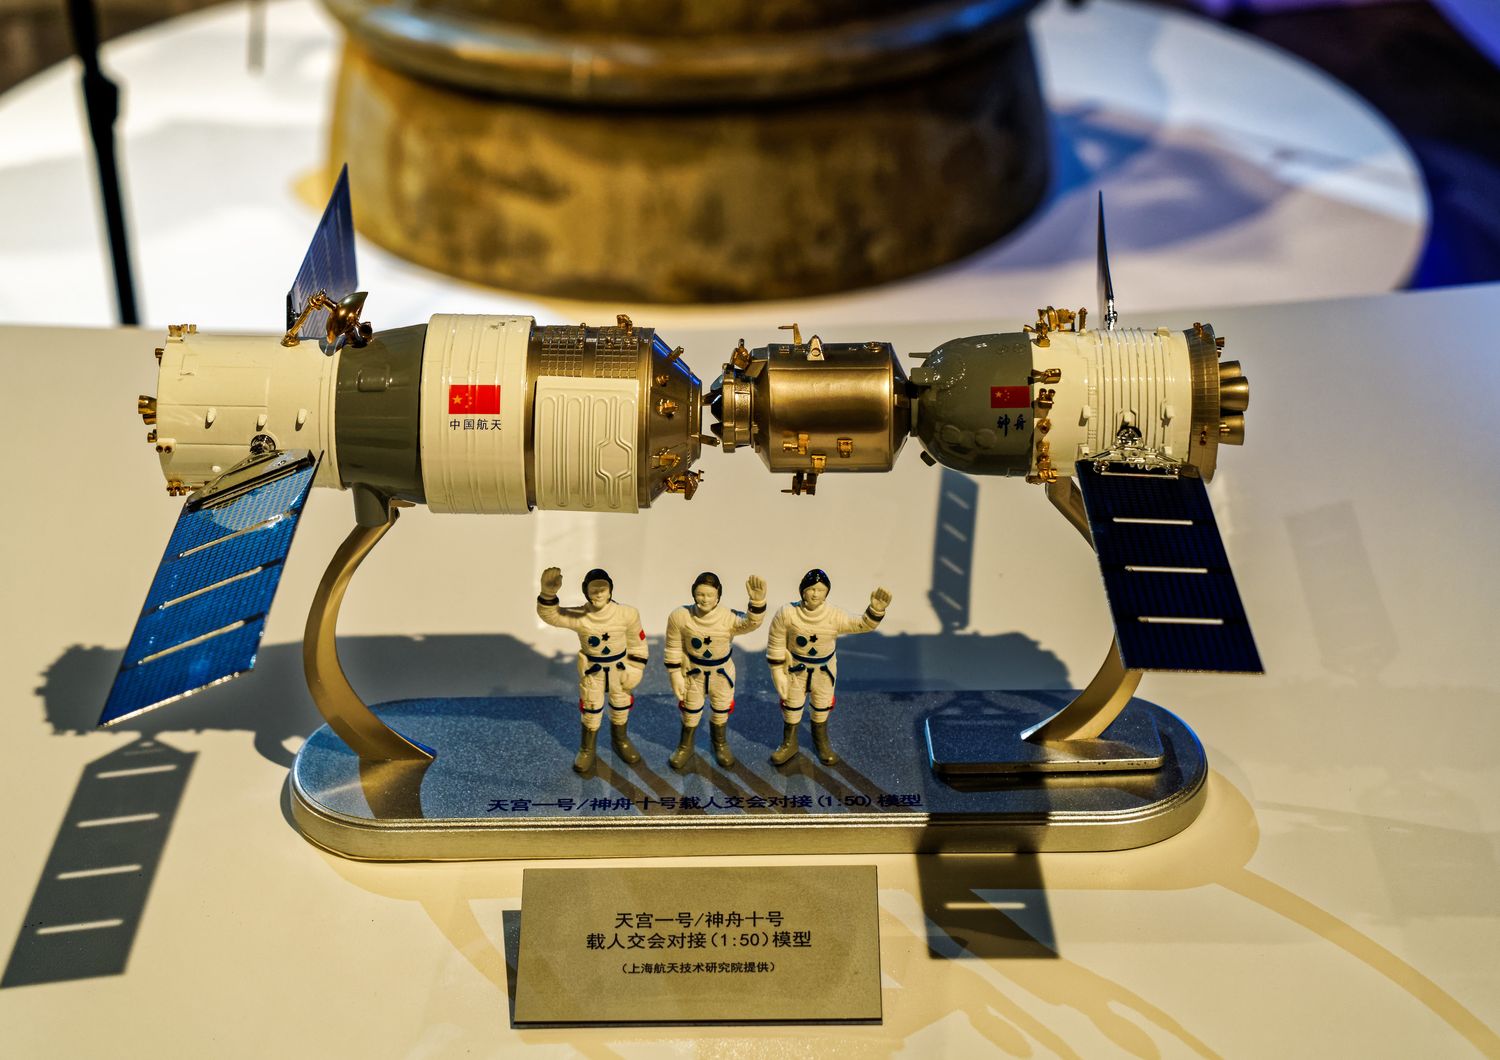 &nbsp;Un modellino della stazione spaziale cinese Tiangong 1 all'epoca del docking con la navicella che portava l'equipaggio